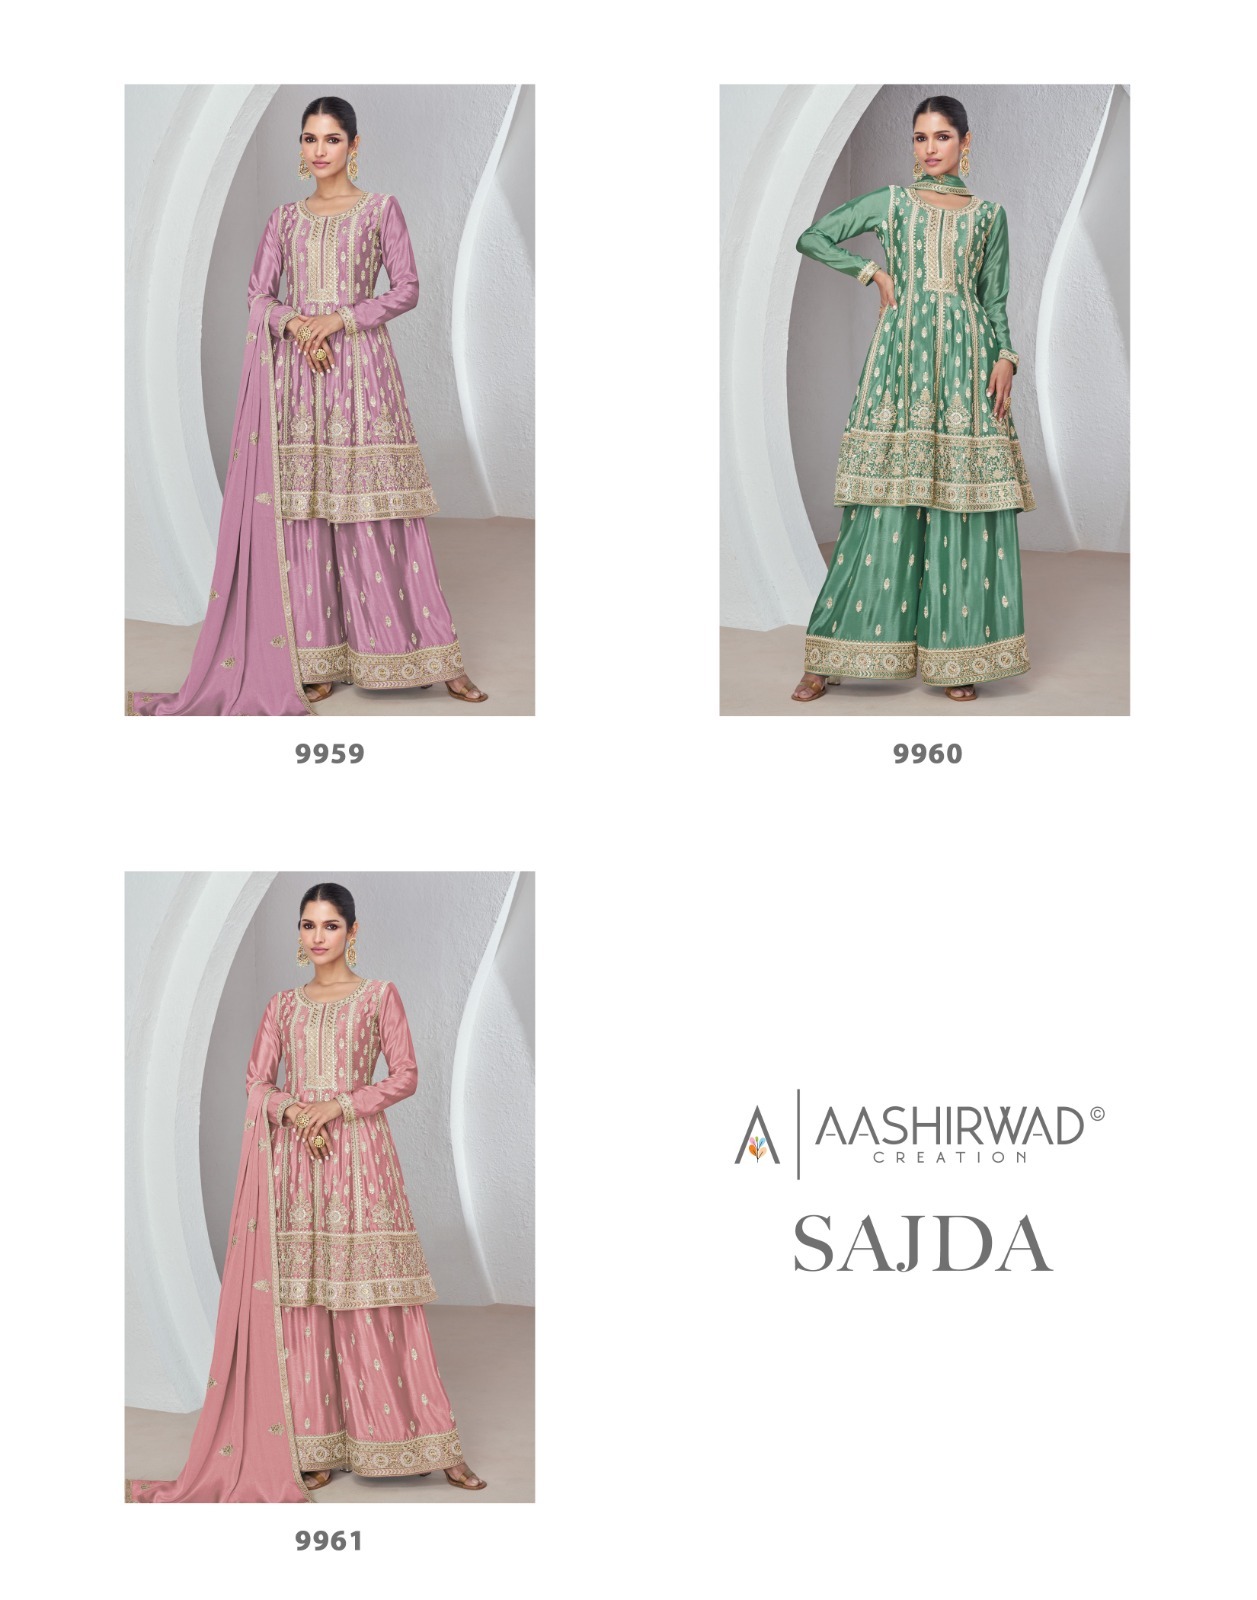 Aashirwad Sajda collection 1